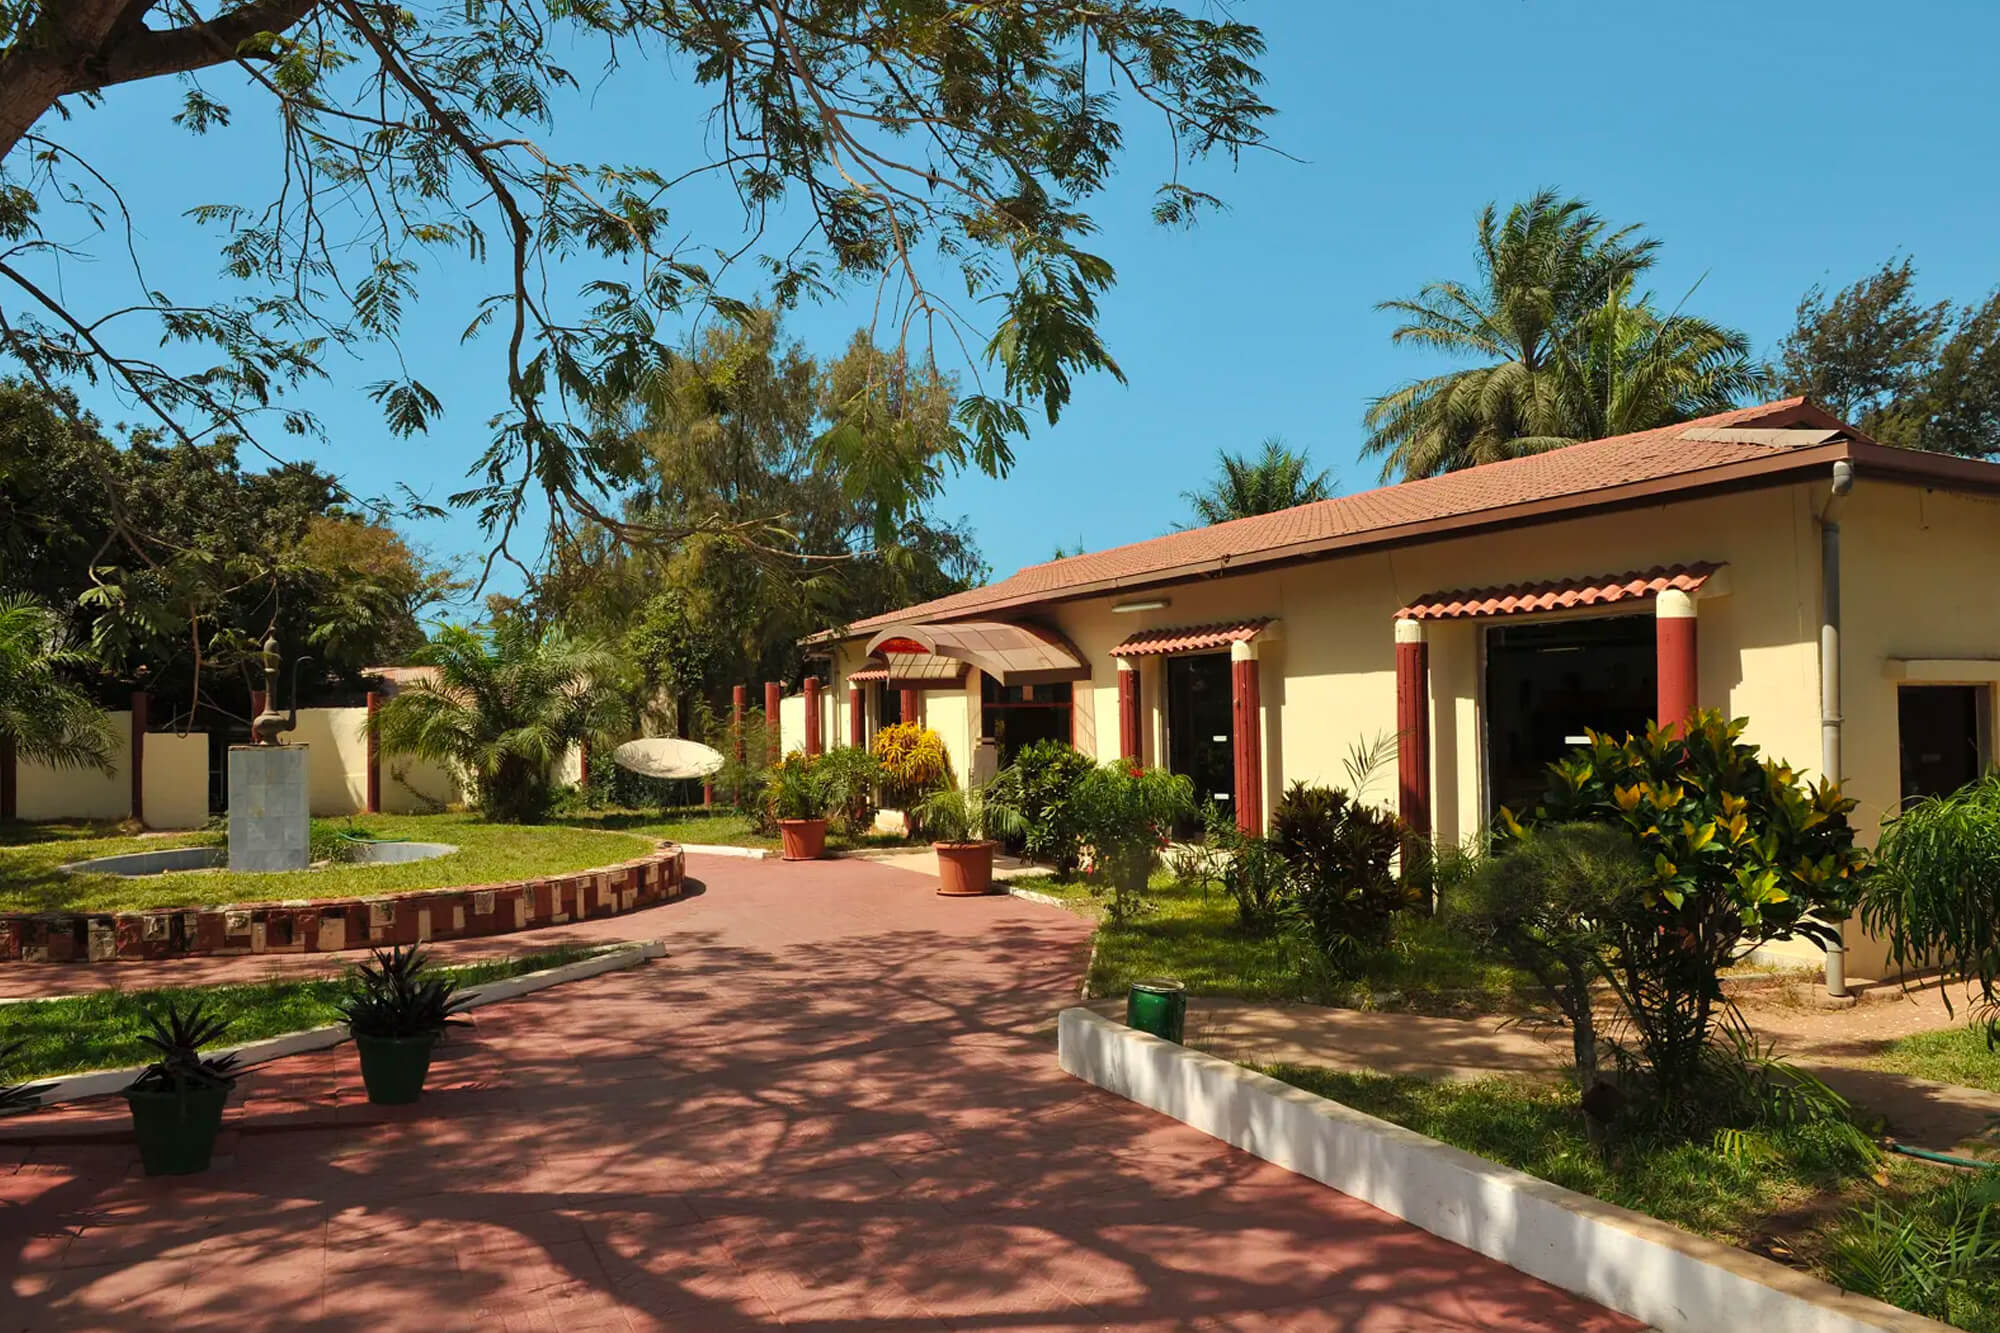 Accommodaties van het Palma Rima hotel en resort in Gambia, Kololi